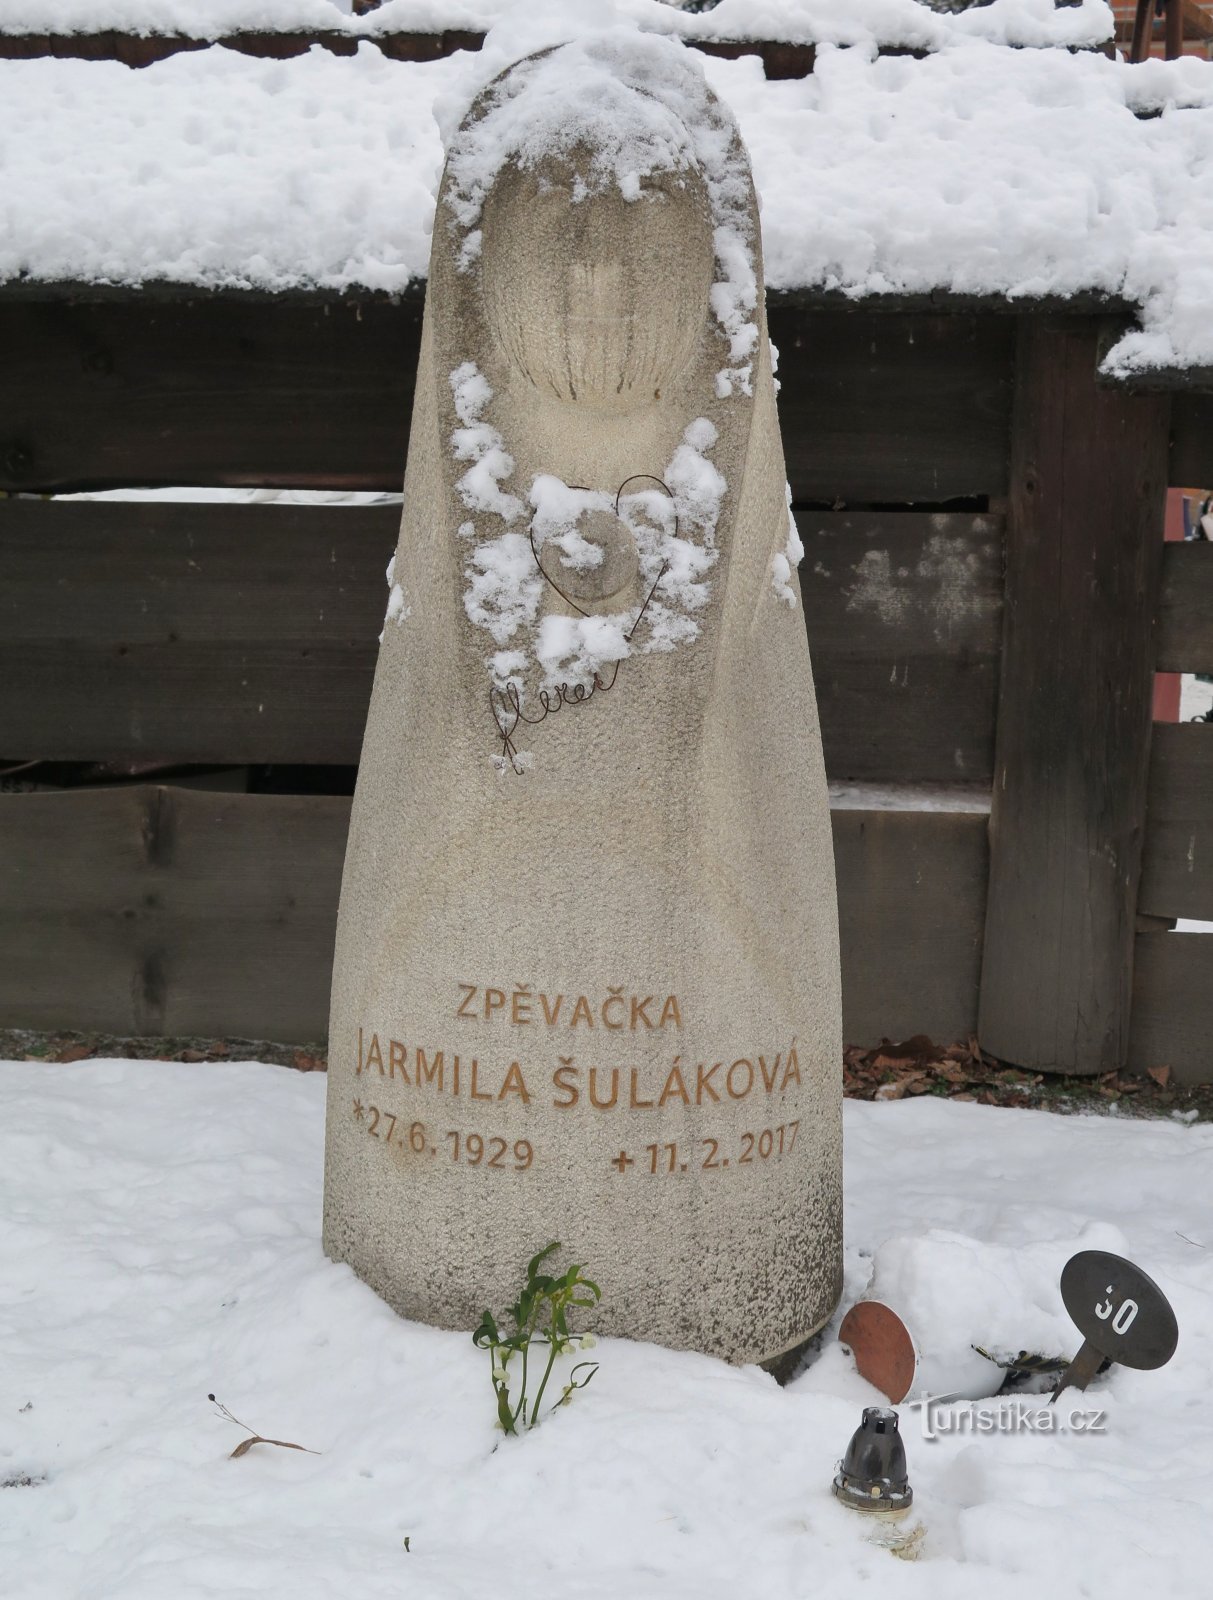 Рожнов-под-Радгоштем – мемориальная могила валашской королевы Ярмилы Шулаковой.